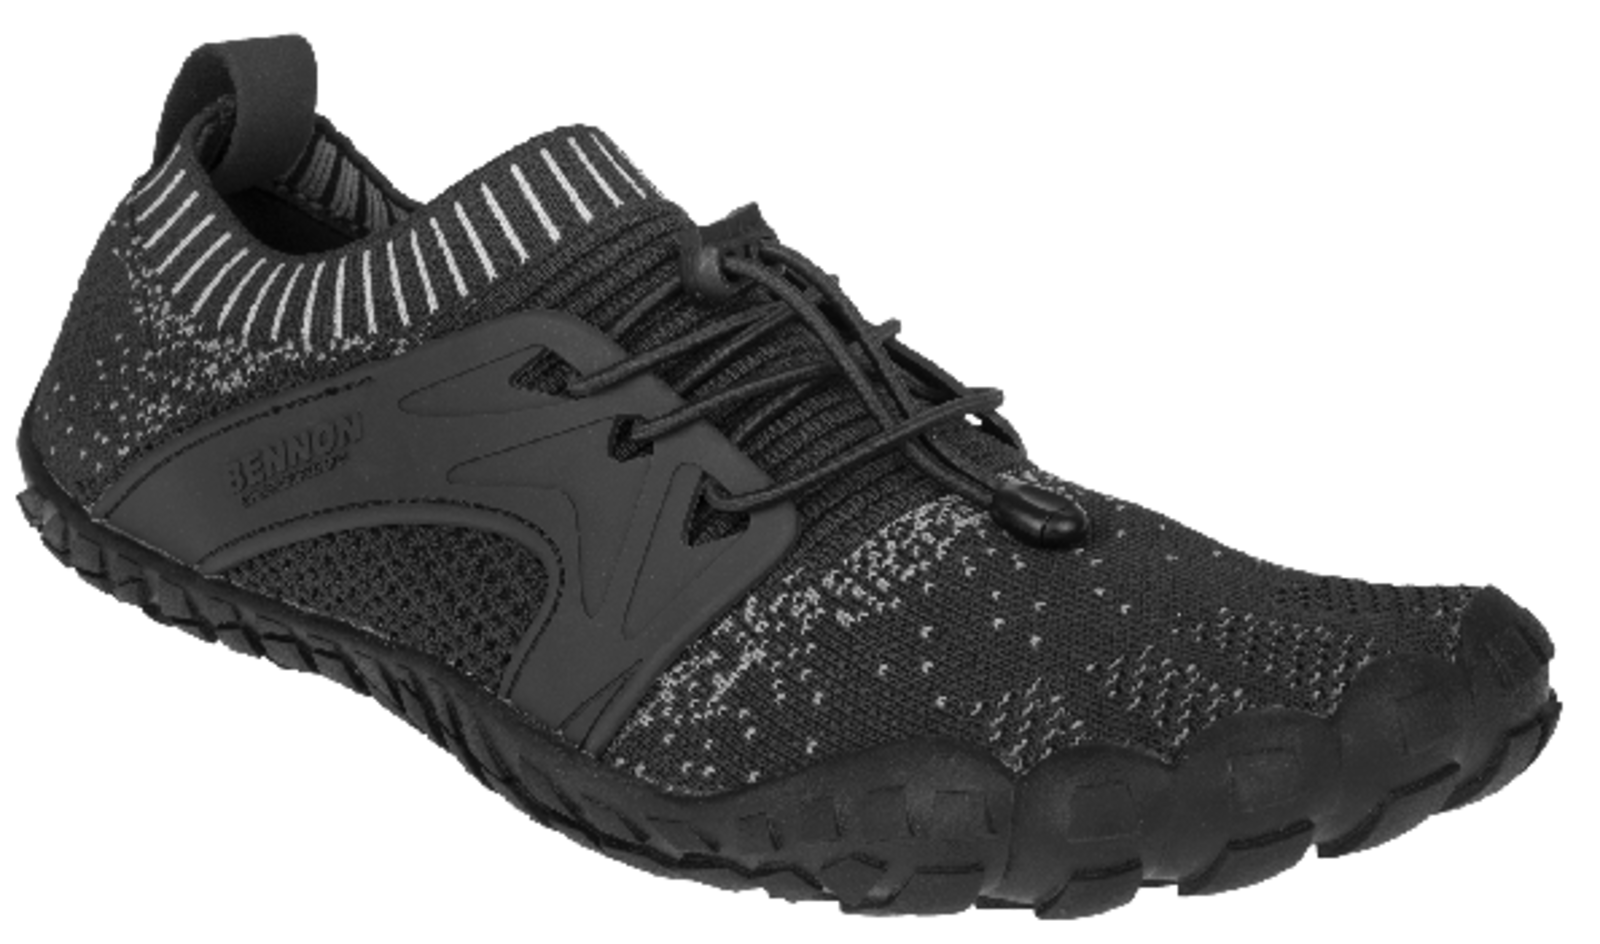 Voľnočasová barefoot obuv Bennon Bosky - veľkosť: 41, farba: čierna/biela